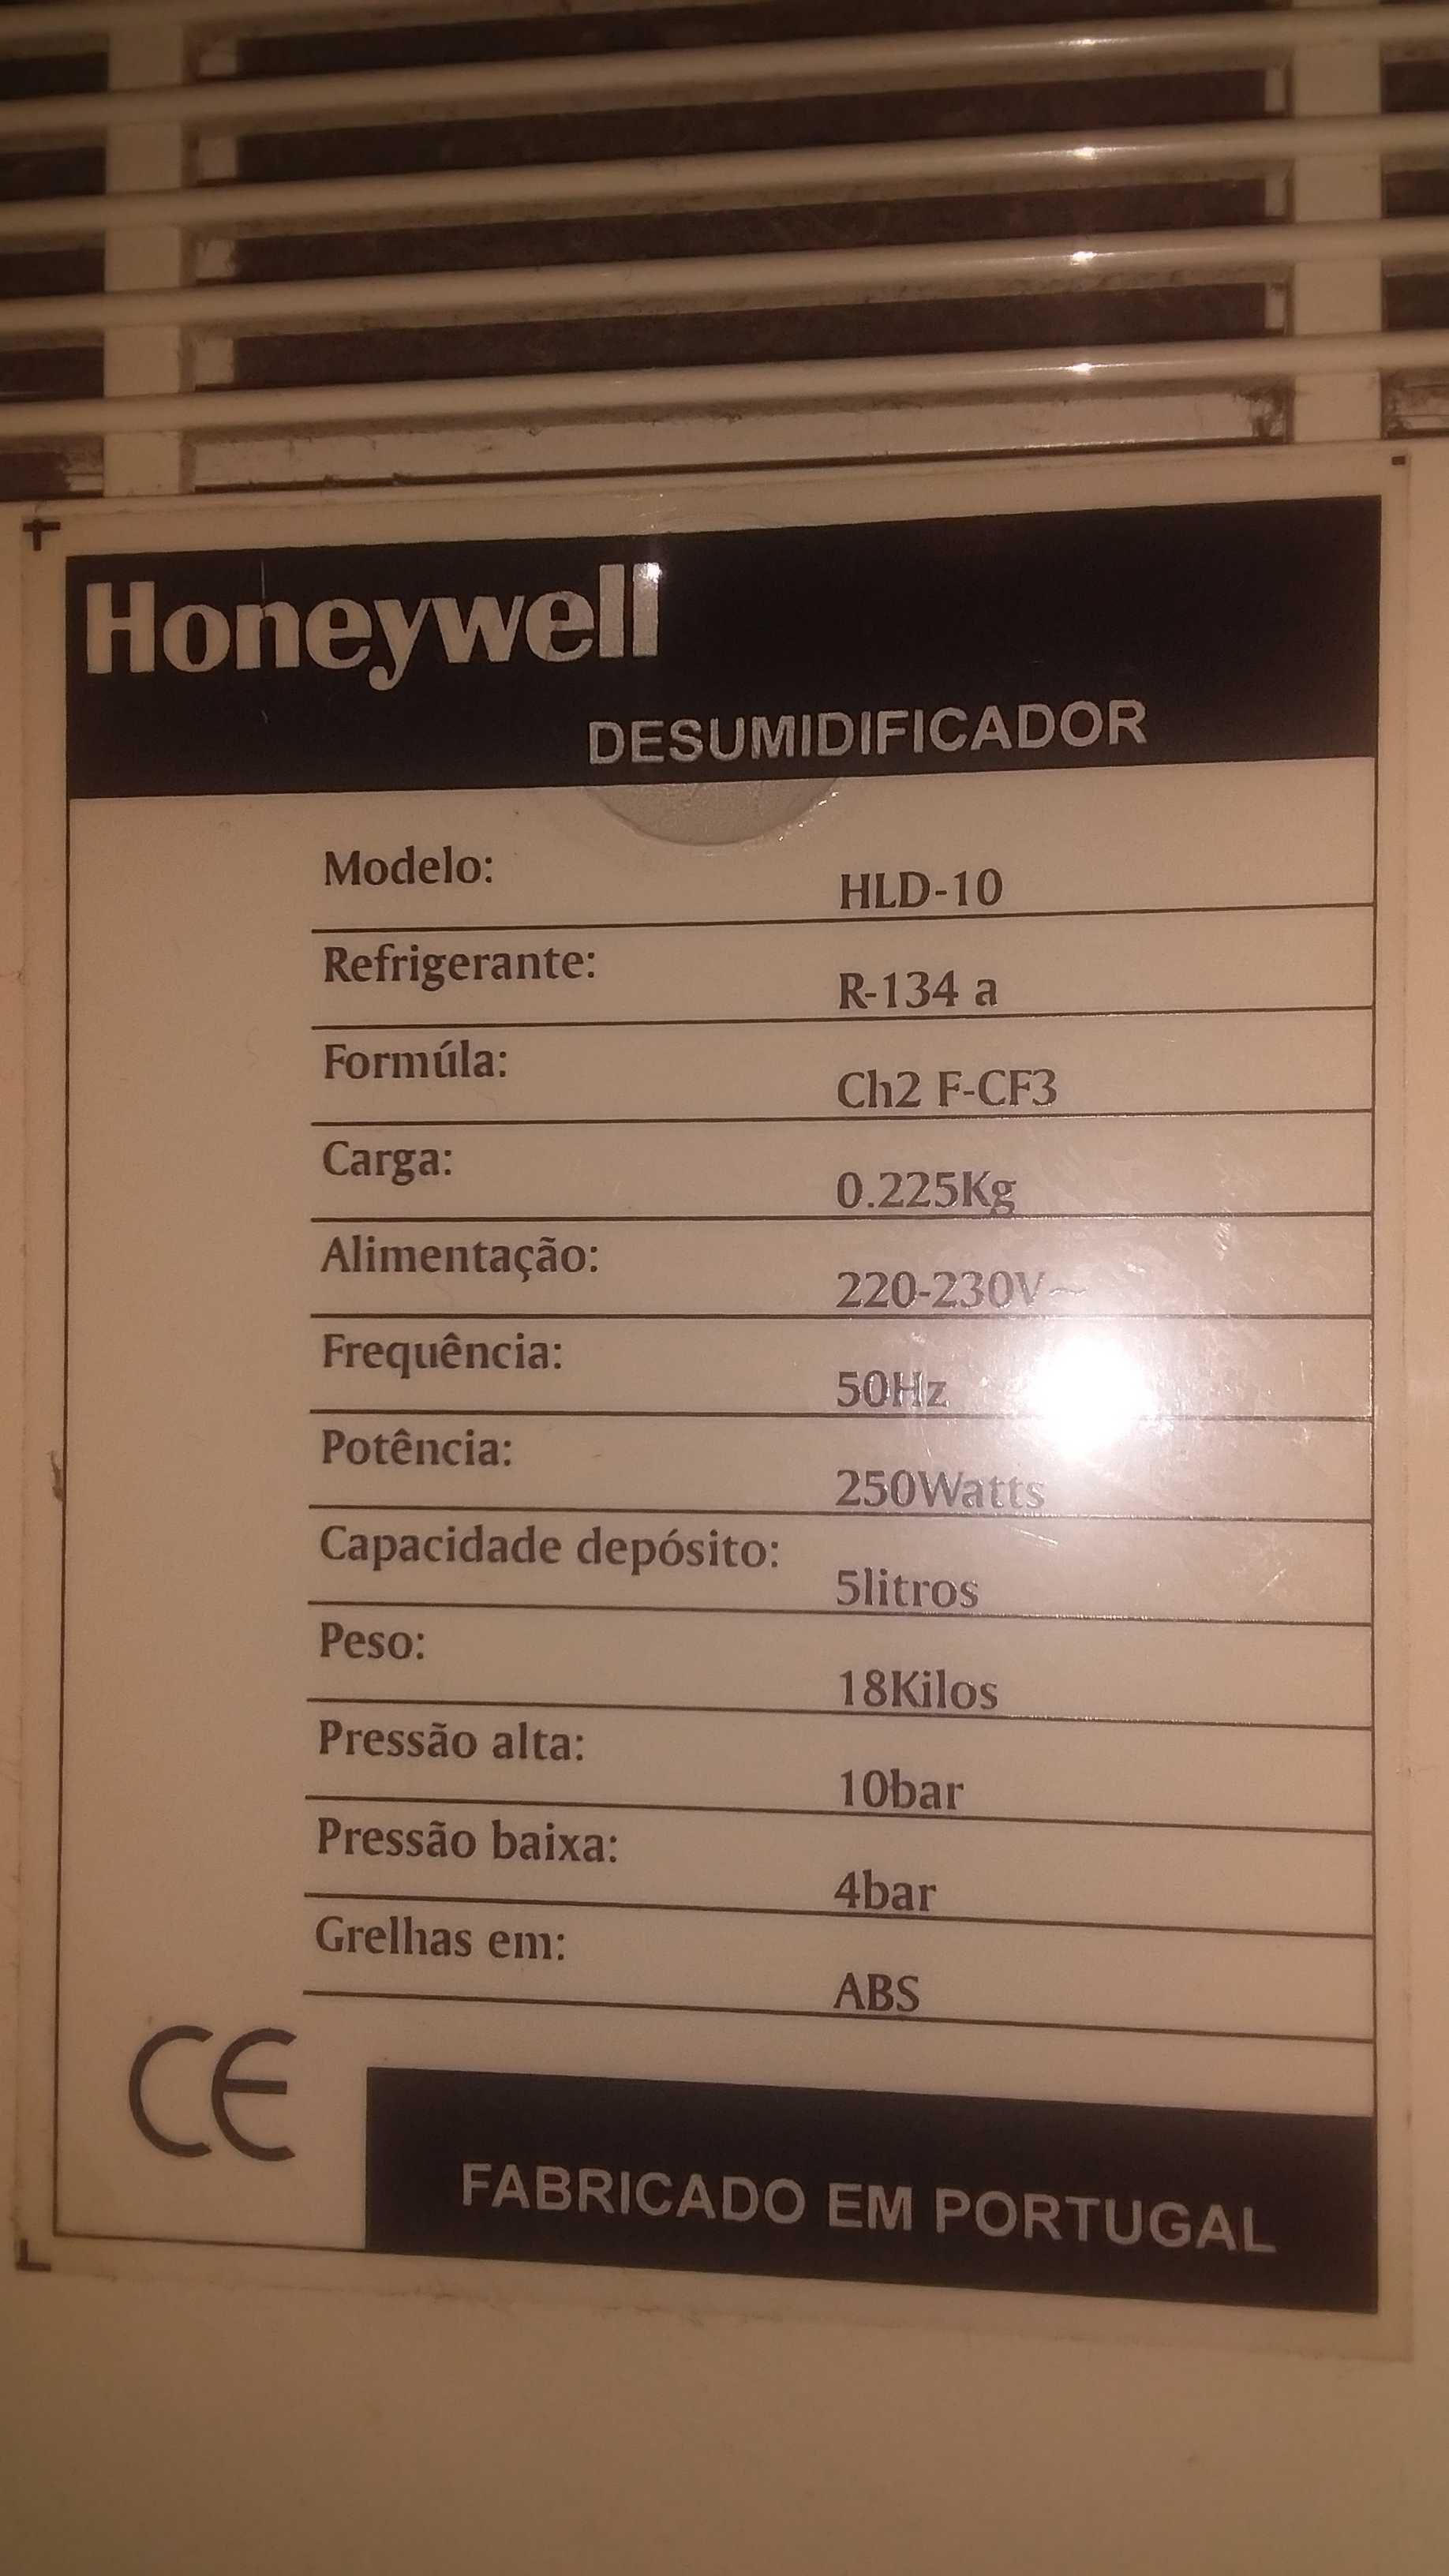 Desumidificador Honeywell